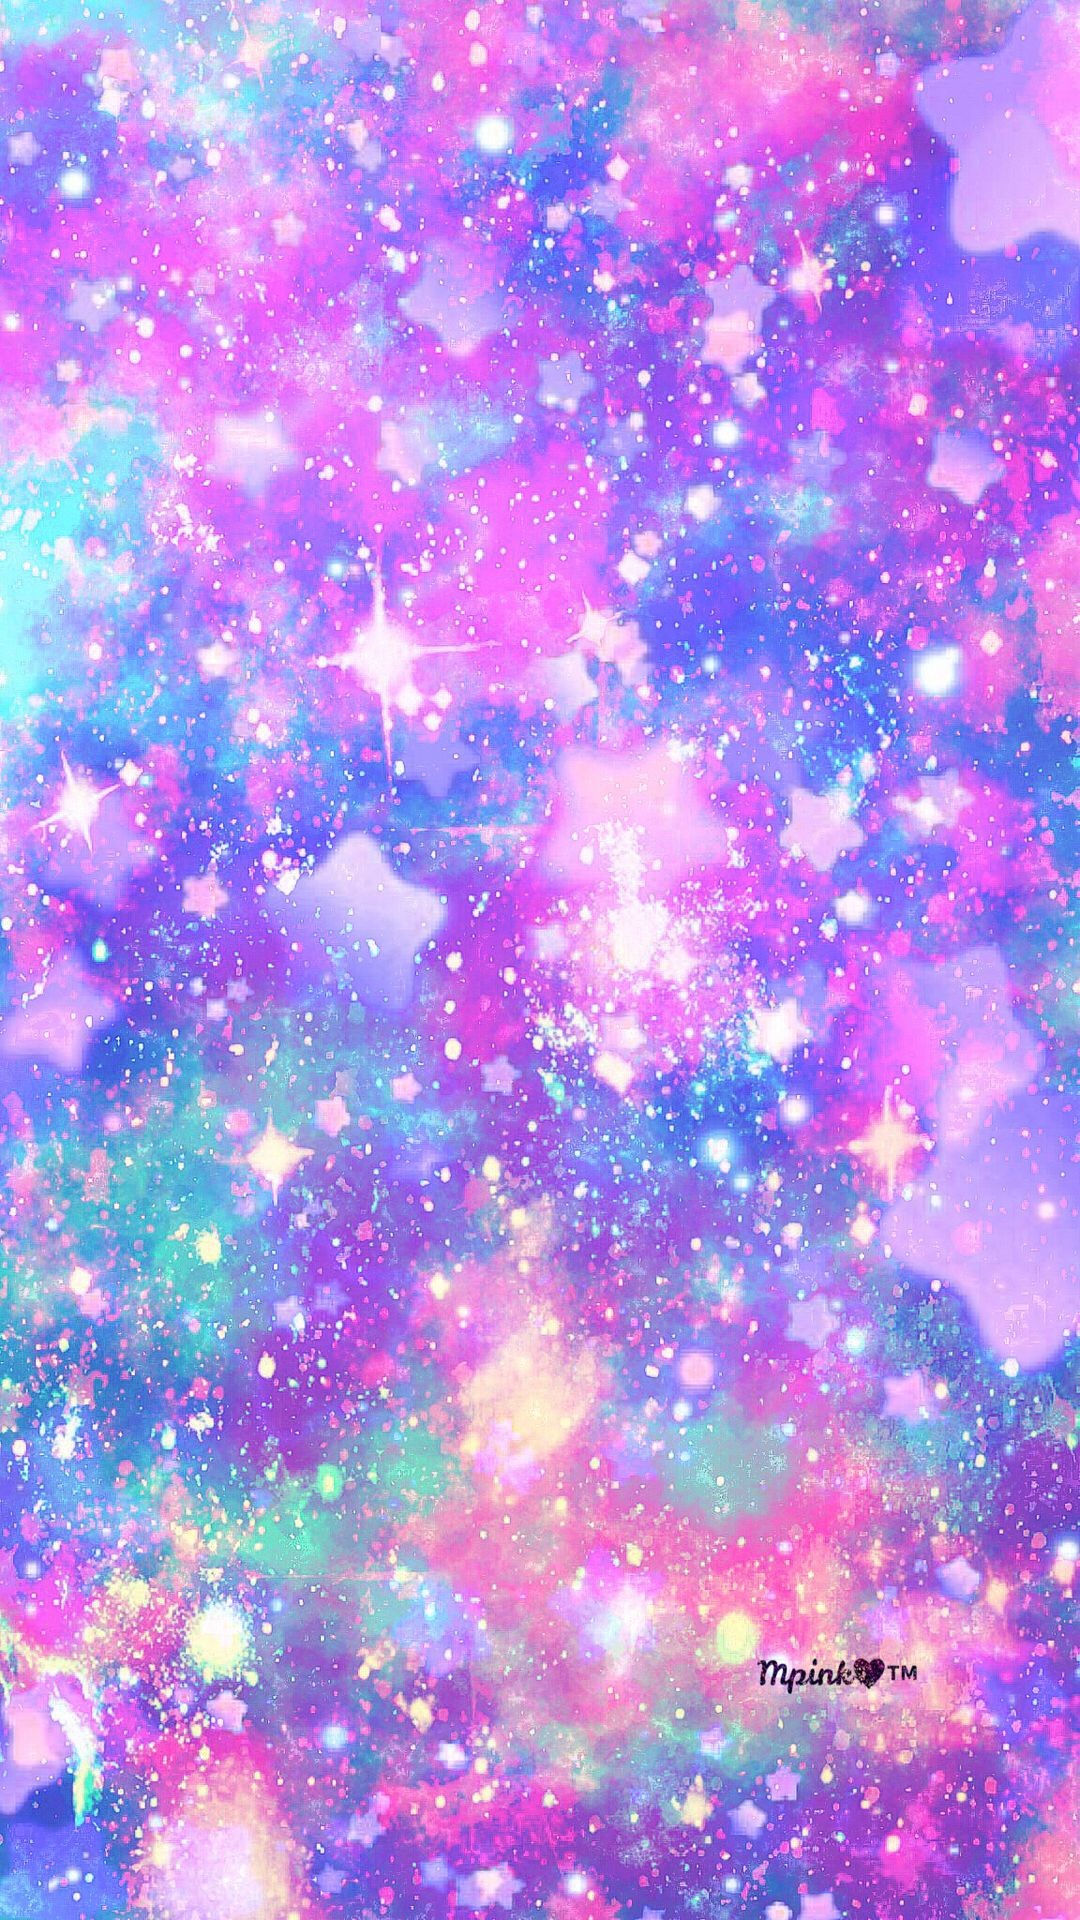 1080x1920 Pastel Stars Galaxy Wallpaper #androidwallpaper #iphonewallpaper #wallpaper  #galaxy #sparkle #glitter #lockscreen #pretty #pink #cute #stars #sky  #purple ...